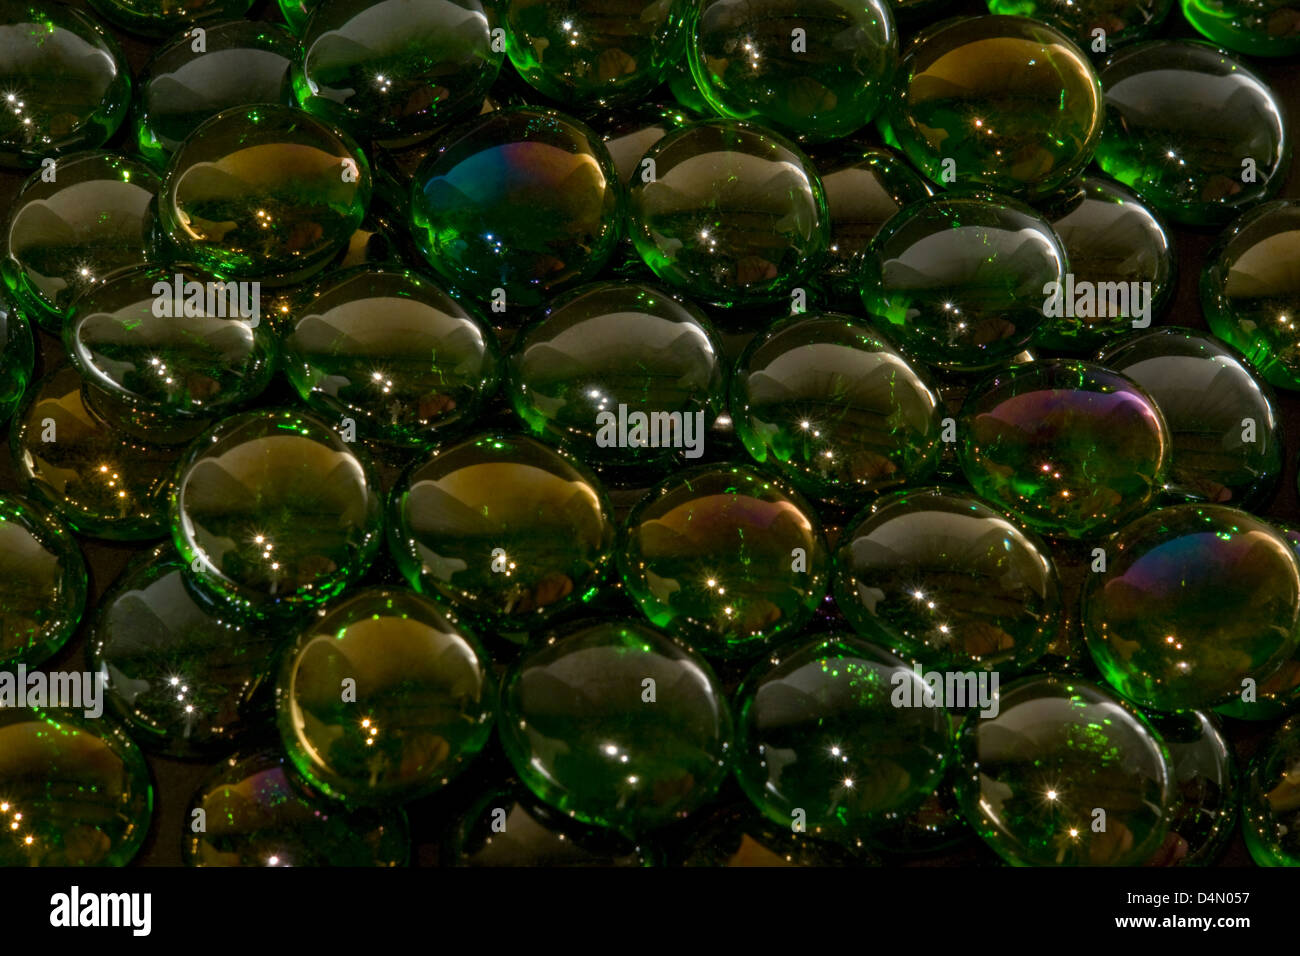 Résumé fond plein cadre photo avec billes en verre vert irisé retour sombre Banque D'Images